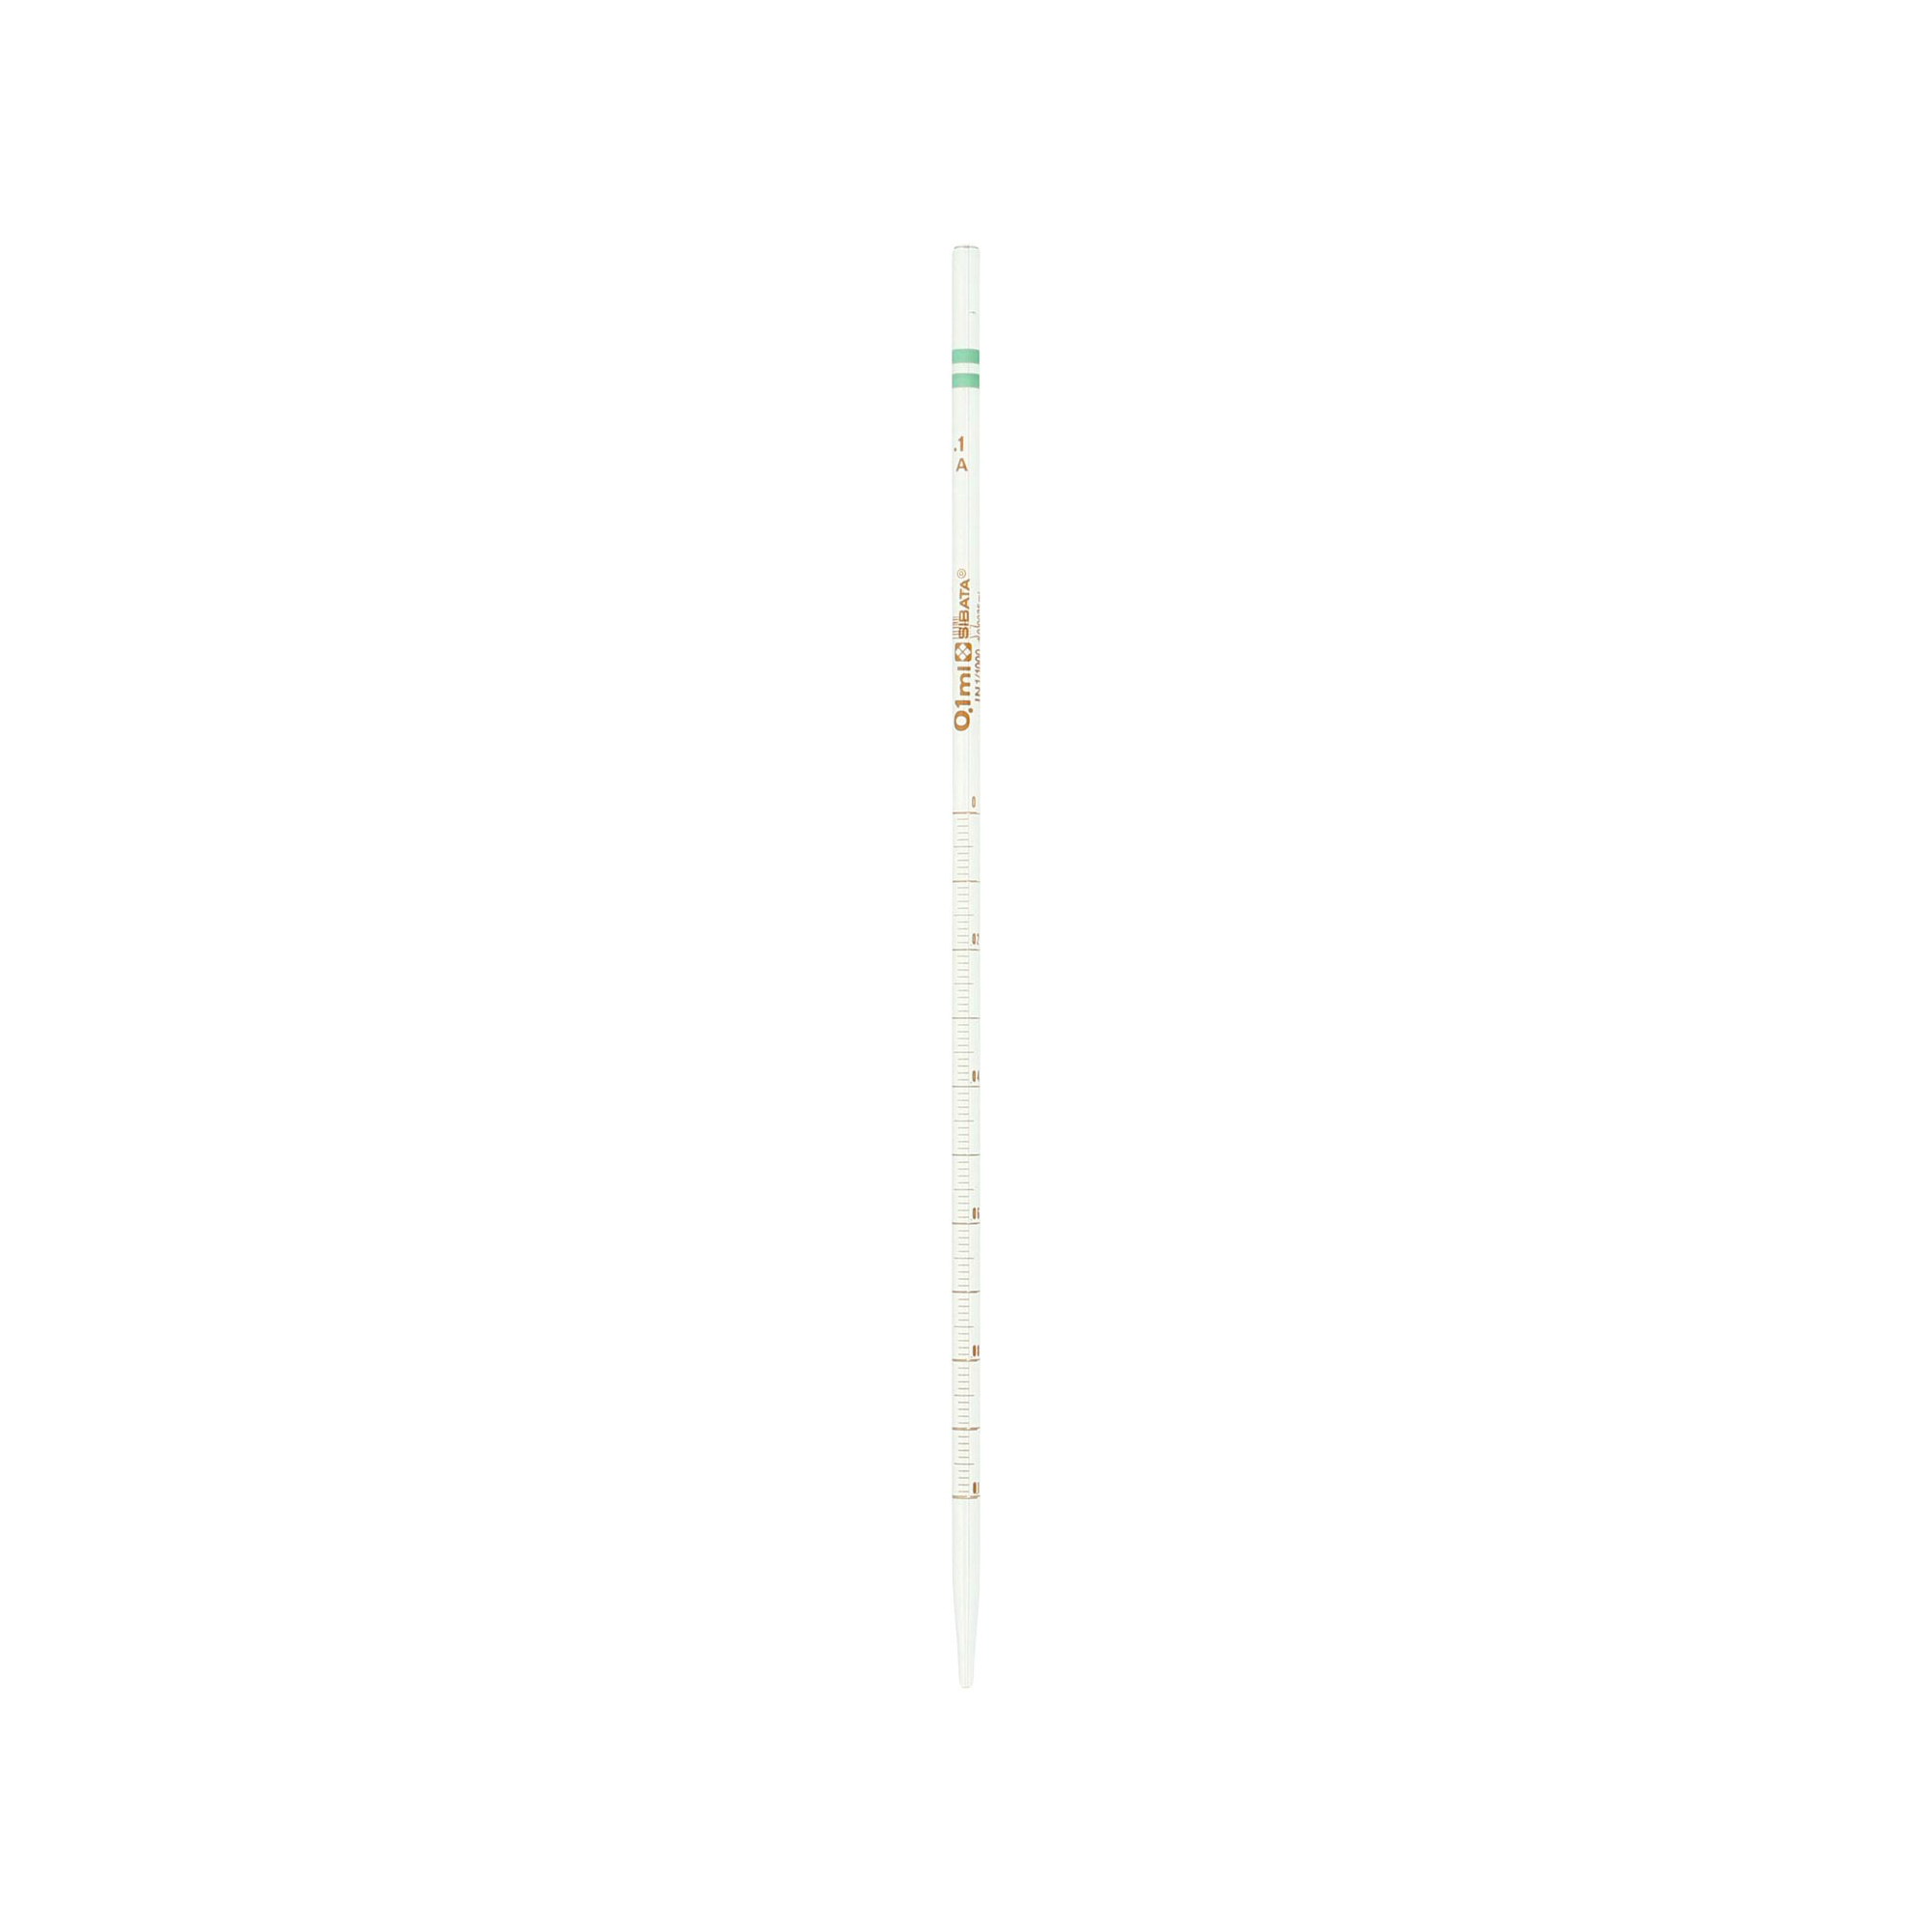 020010-01A メスピペット 中間目盛 カラーコード付 スーパーグレード 0.1mL(10本) 柴田科学(SIBATA) 印刷